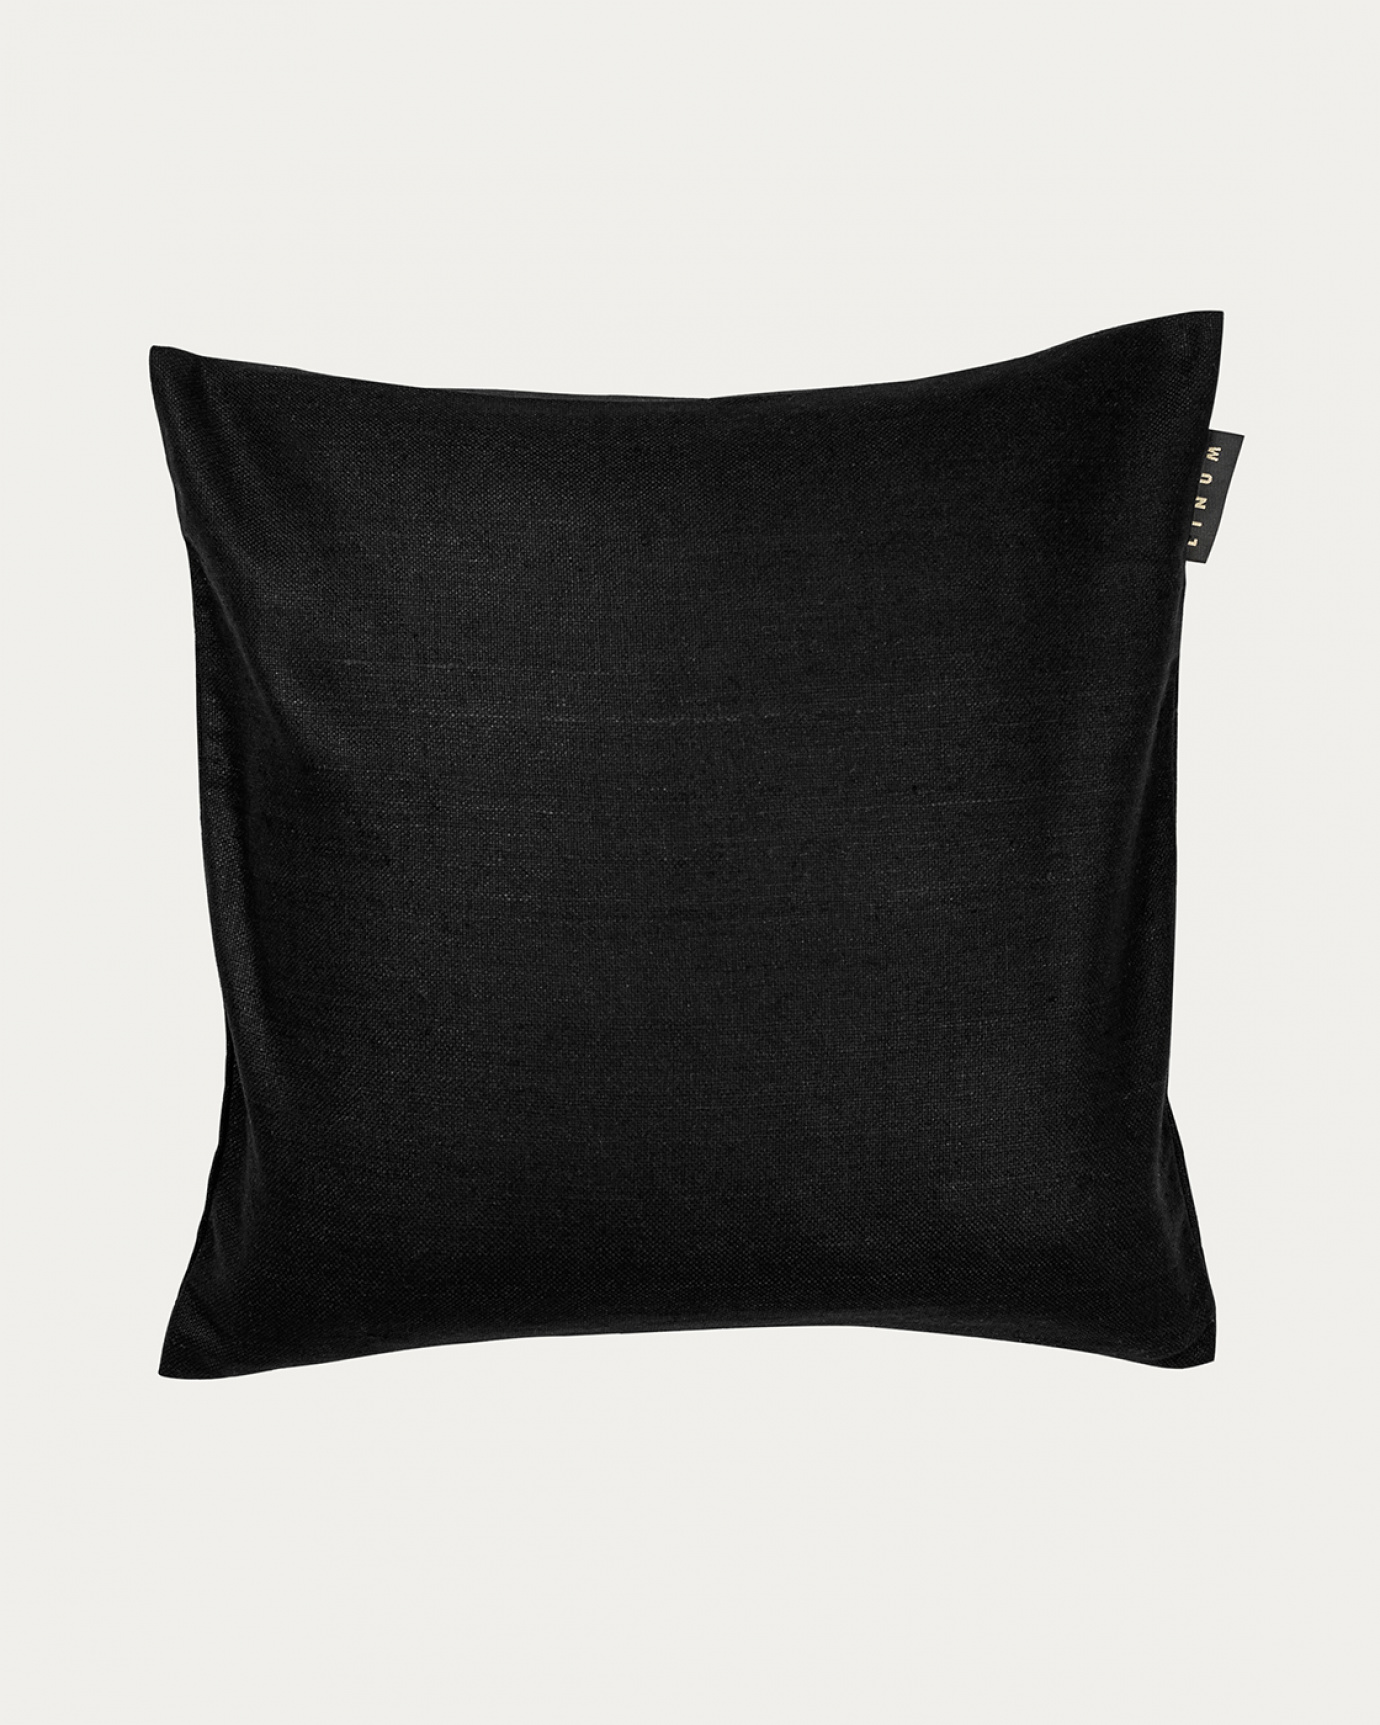 Produktbild schwarz SETA Kissenhülle aus 100% Rohseide mit schönem Glanz von LINUM DESIGN. Größe 50x50 cm.